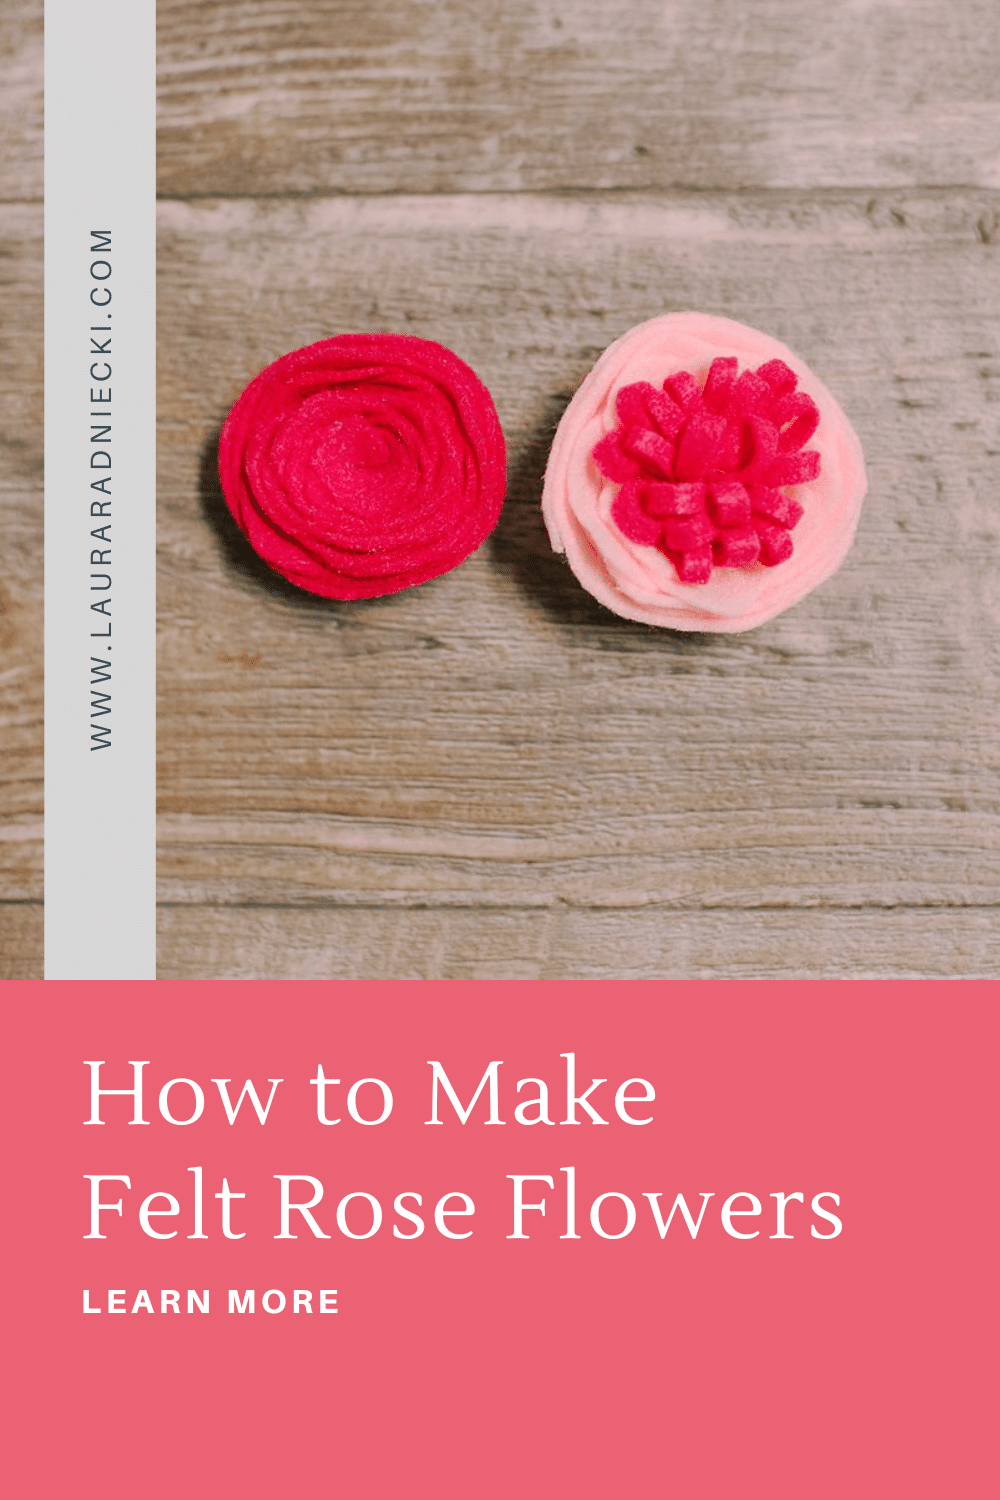 How to Make Felt Rose Flowers | Simple DIY Rose Flower using Felt